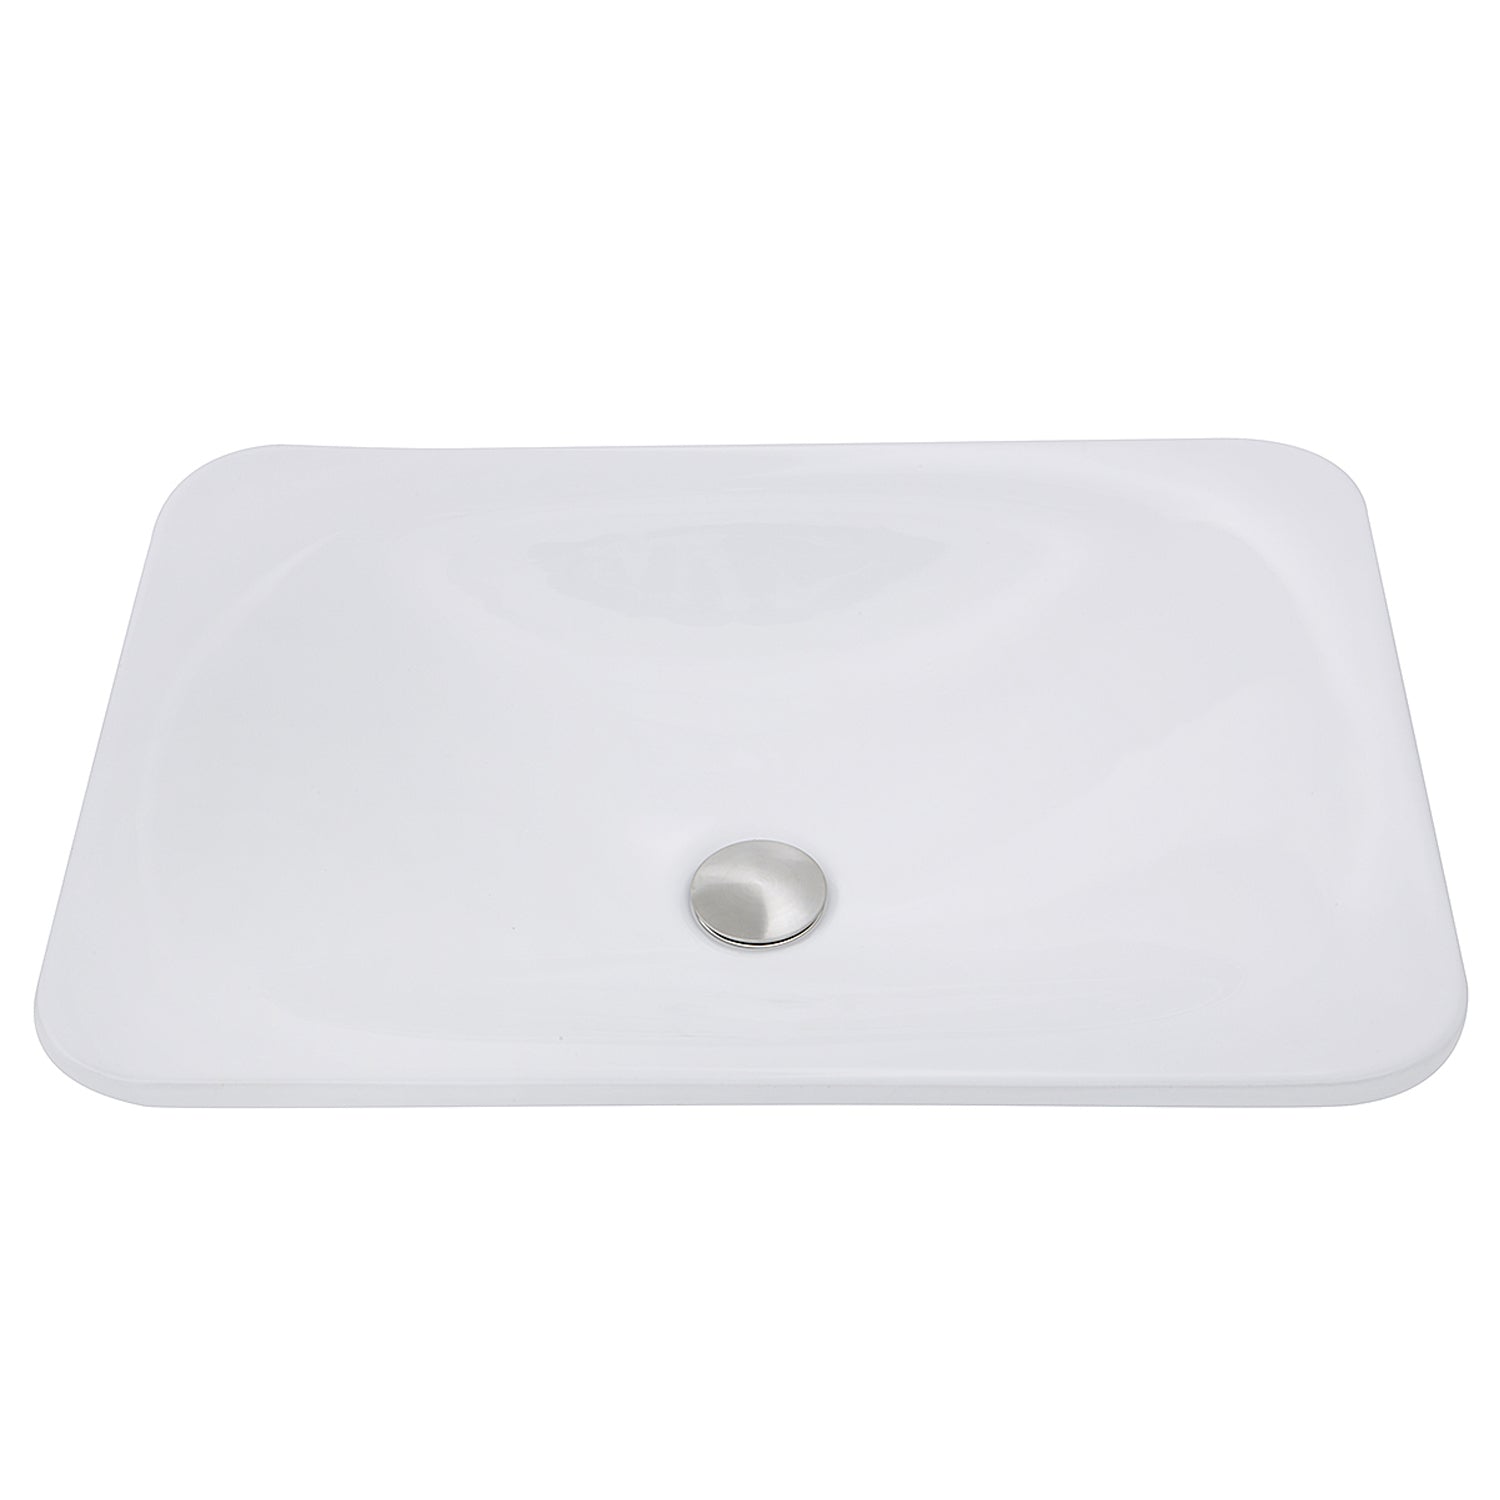 Nantucket Sinks 21-Inch Rectangular Drop-In Ceramic Vanity Sink DI-2114-R DirectSinks